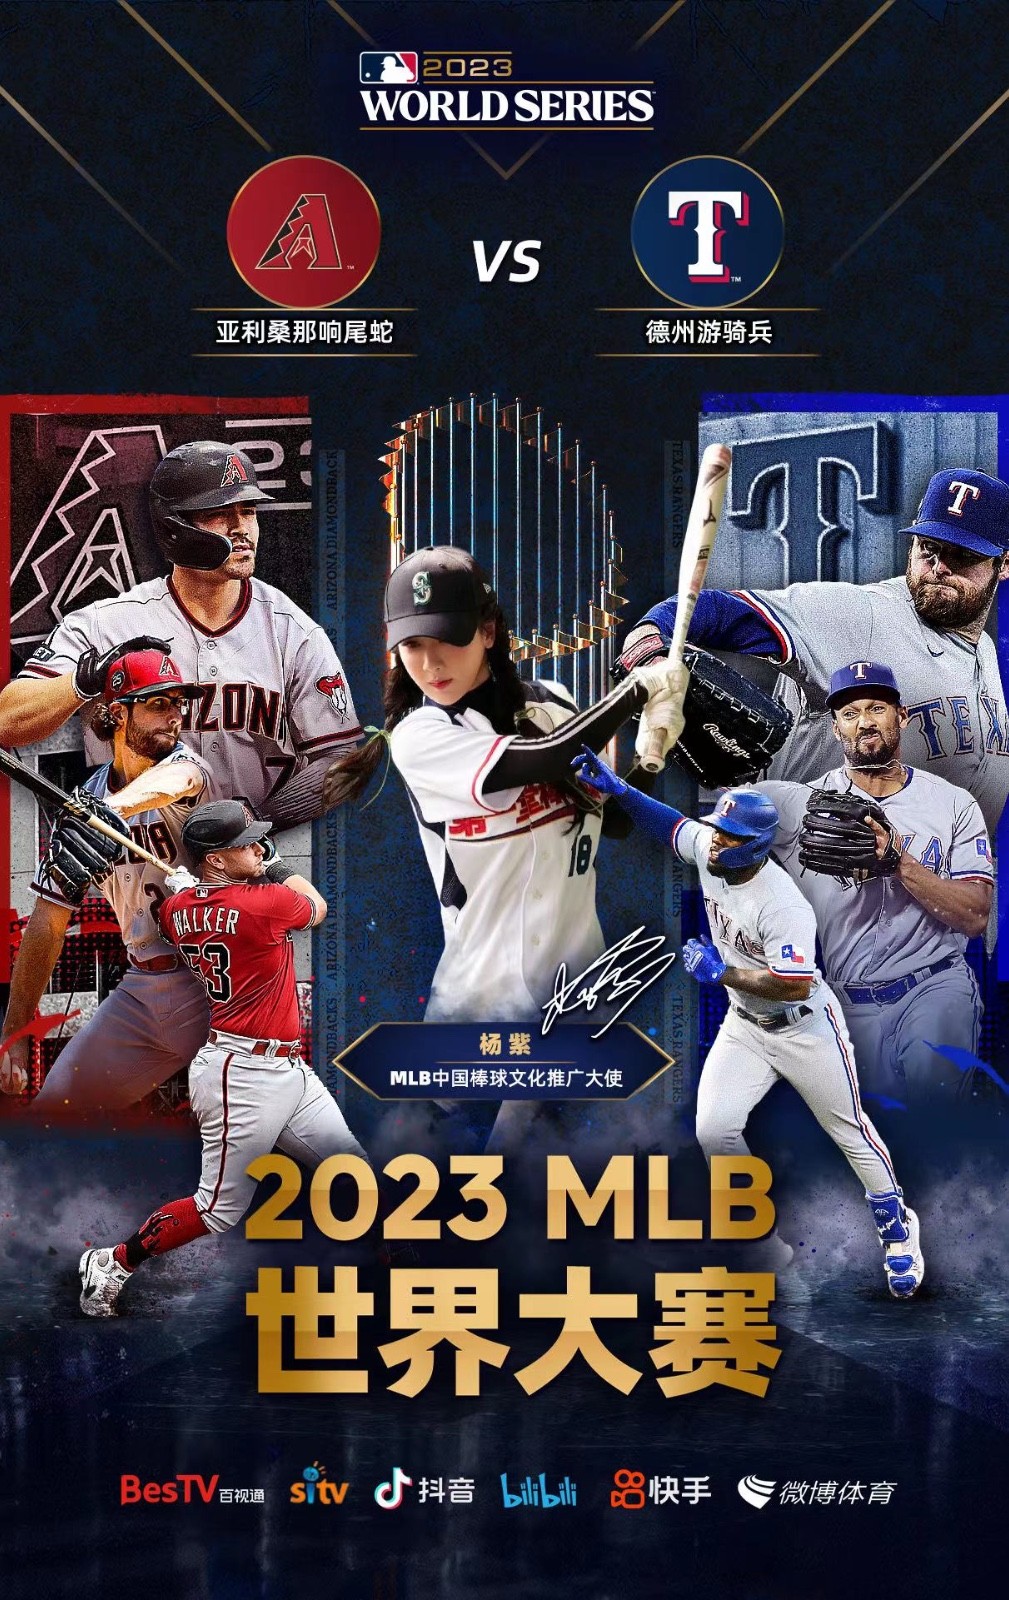 2023 MLB世界大赛开战，14城观赛趴见证棒球狂欢